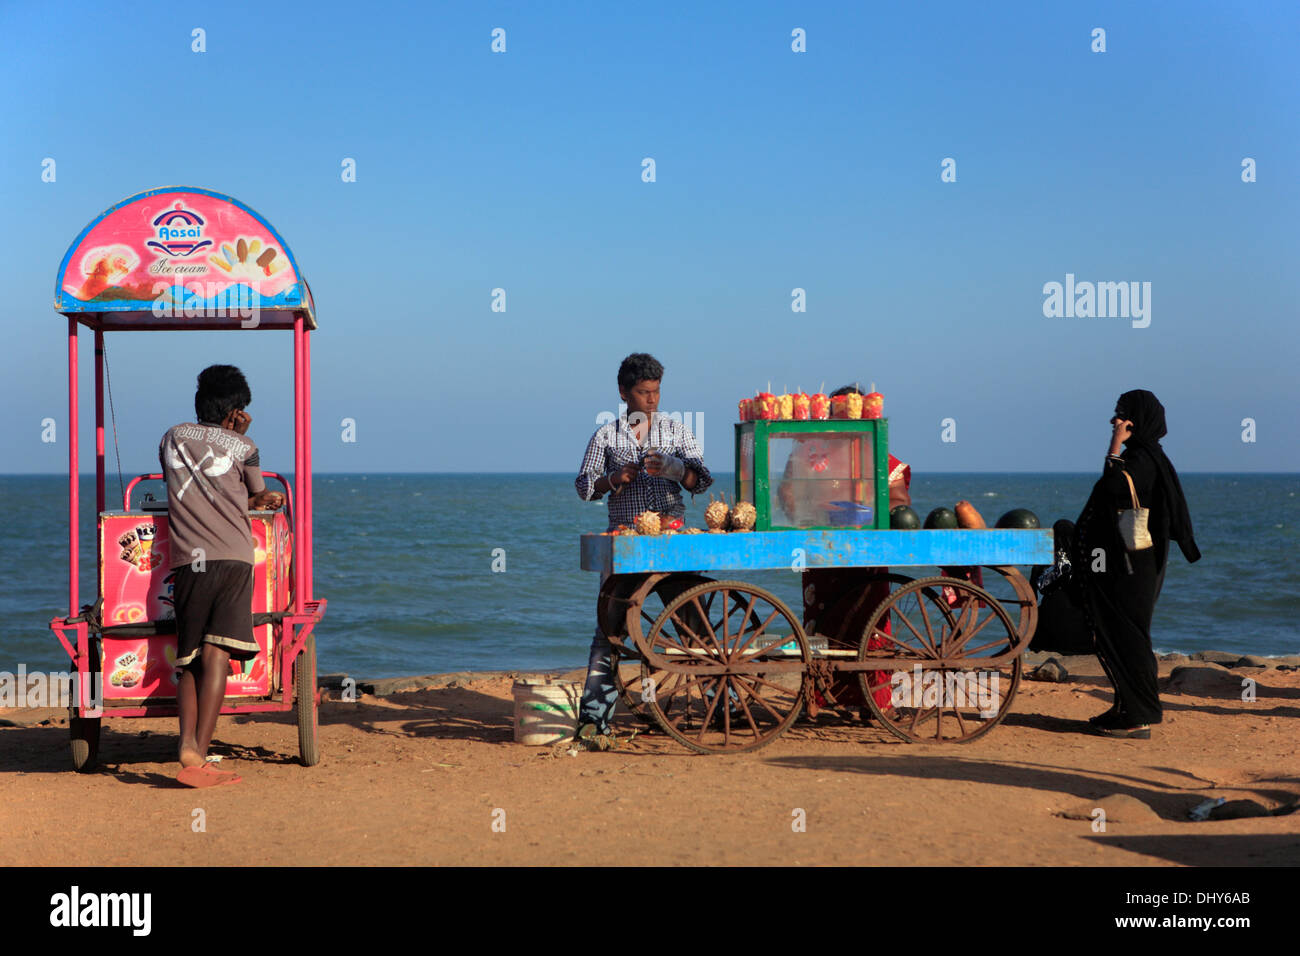 El comercio en la orilla del mar, la ciudad de Pondicherry, Pondicherry, India Foto de stock